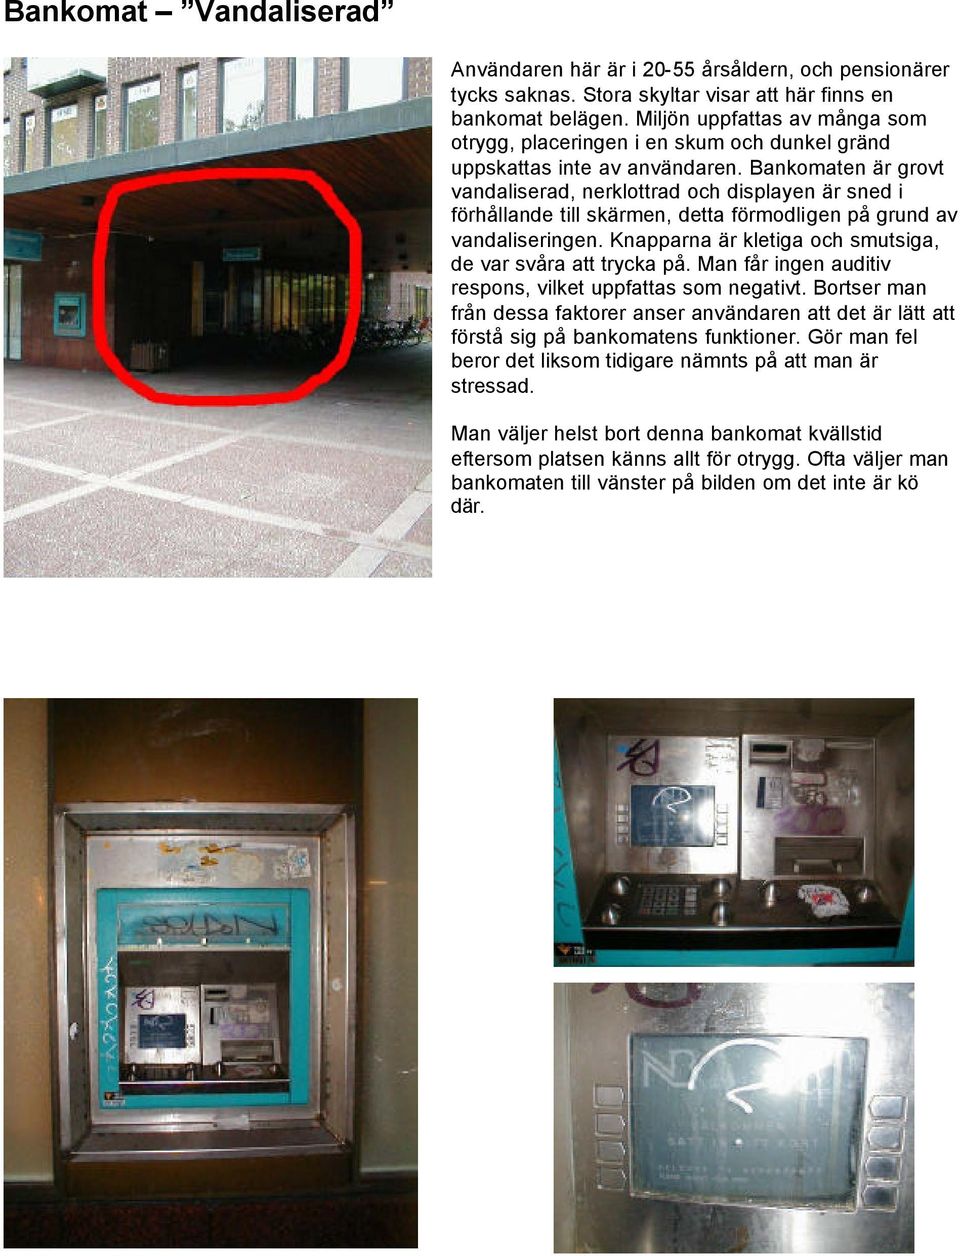 Bankomaten är grovt vandaliserad, nerklottrad och displayen är sned i förhållande till skärmen, detta förmodligen på grund av vandaliseringen.